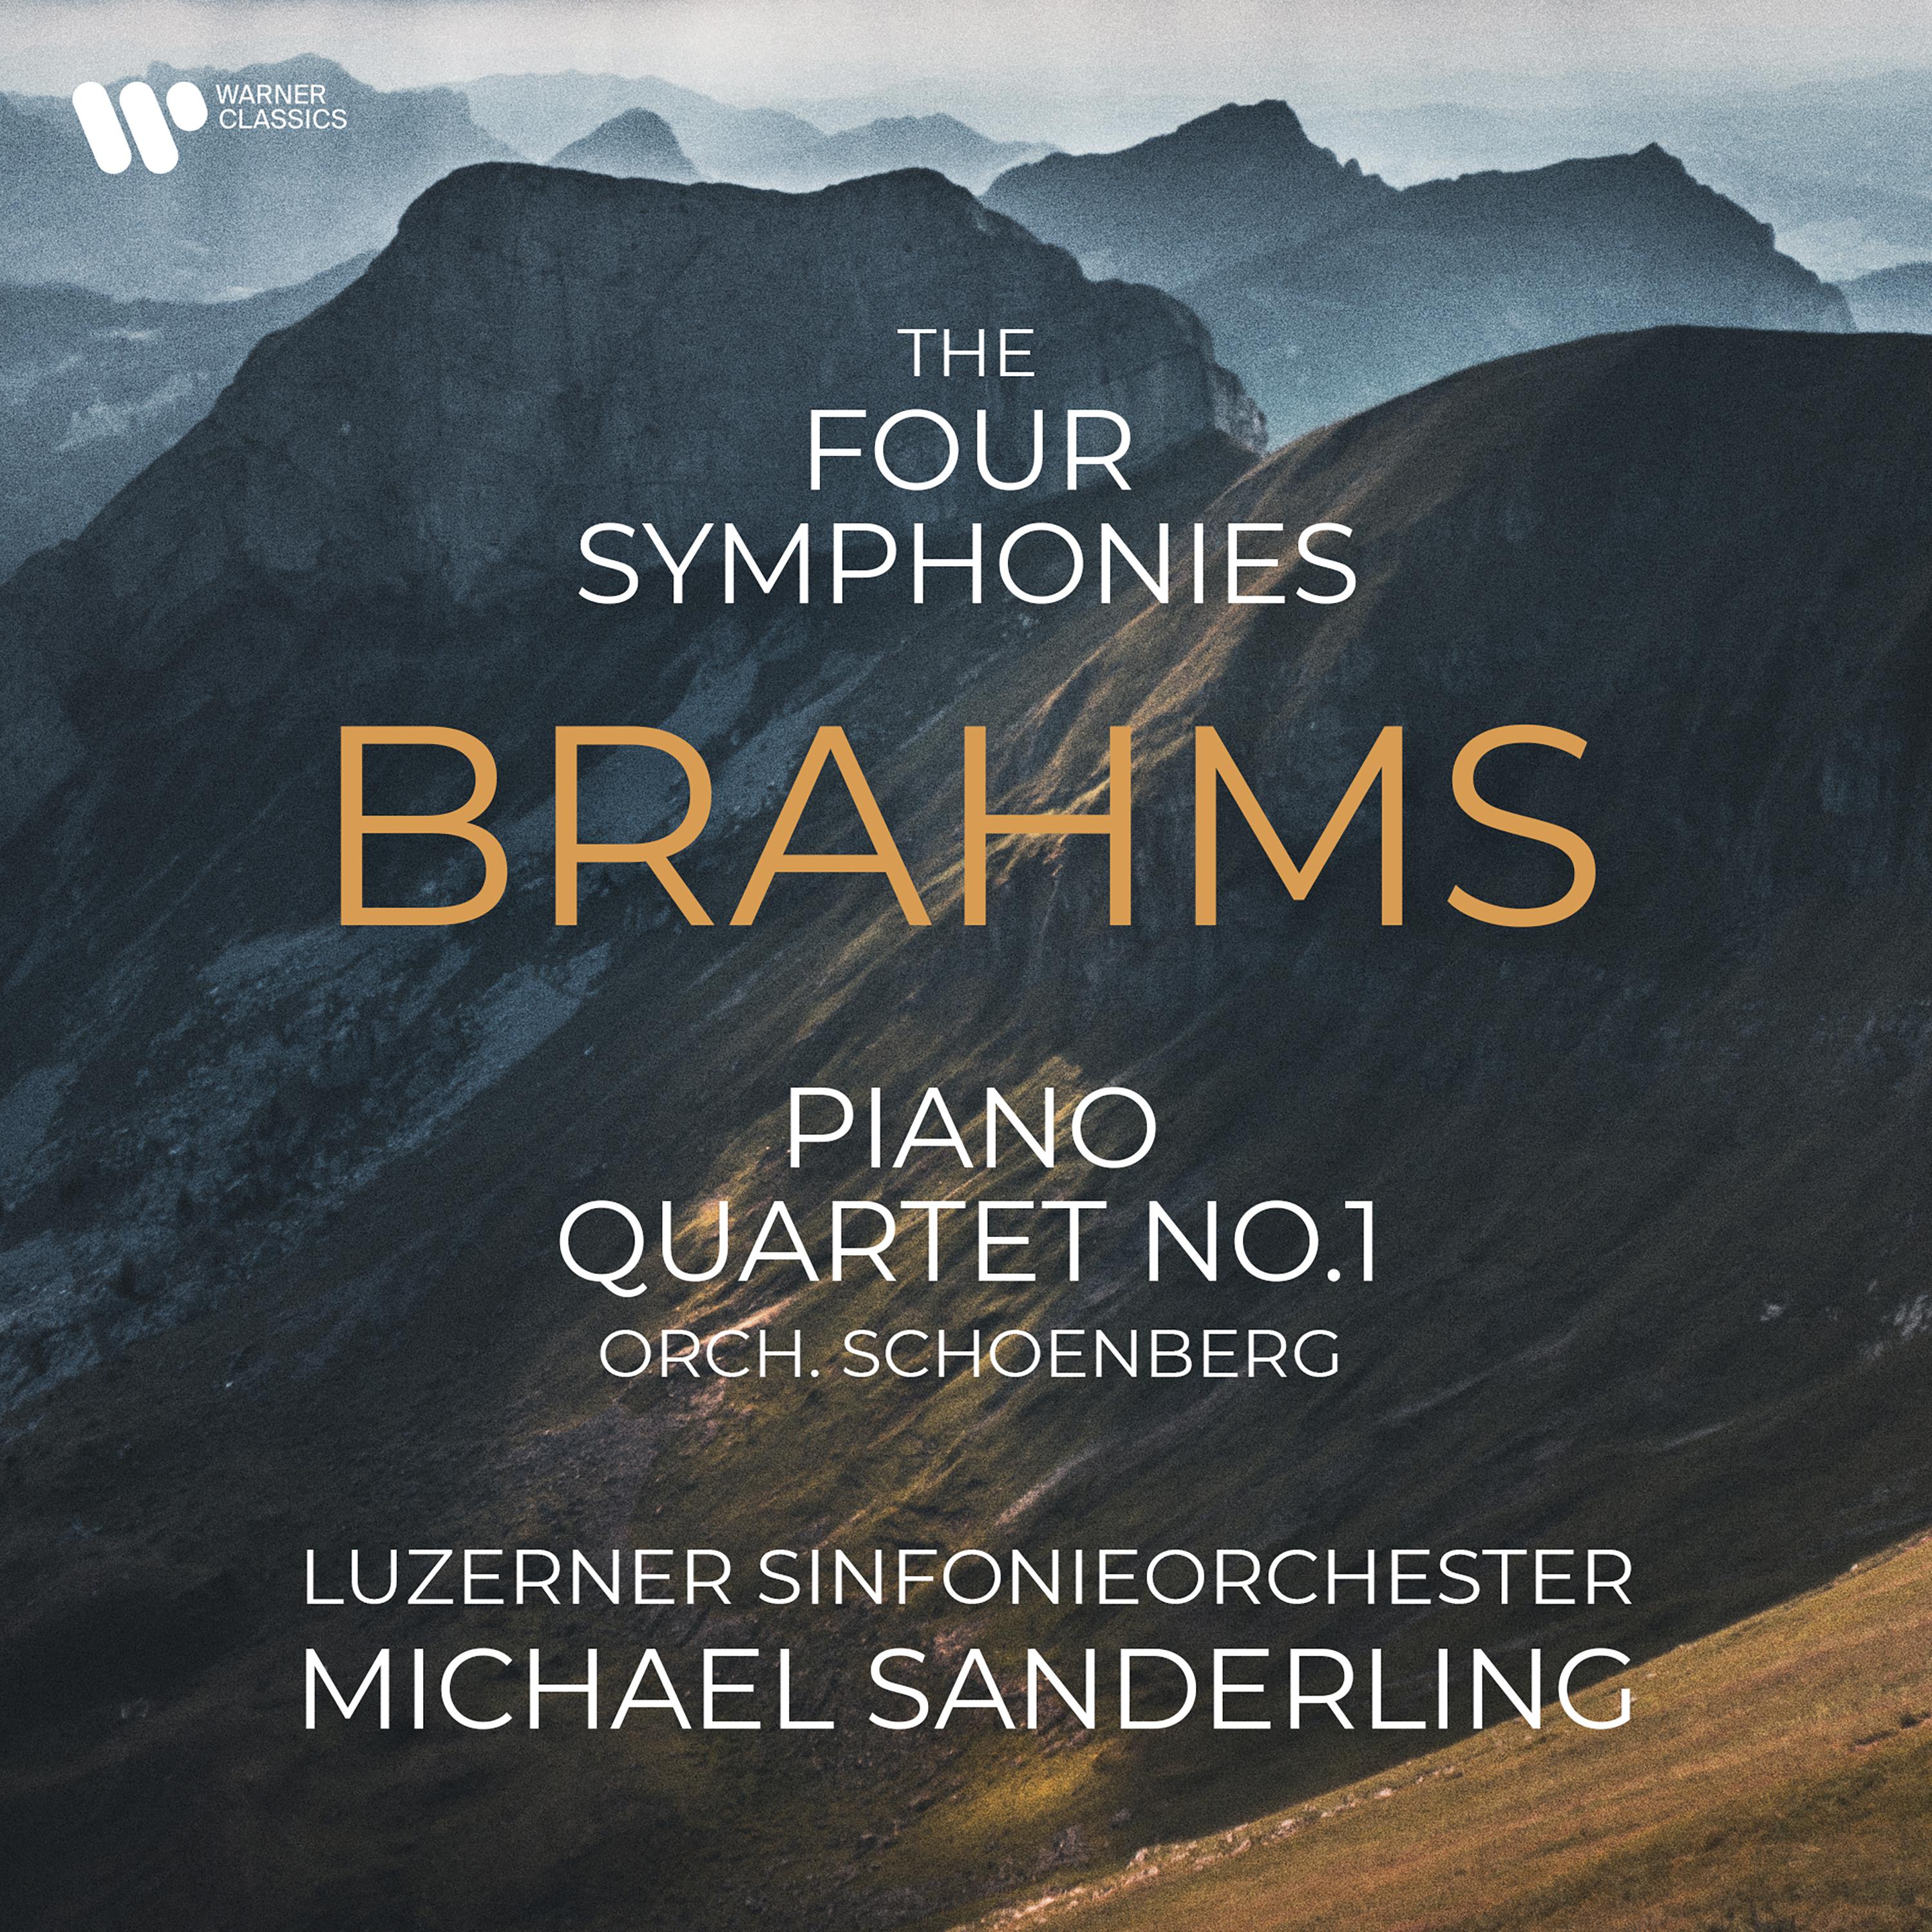 Luzerner Sinfonieorchester - Piano Quartet No. 1 in G Minor, Op. 25:I. Allegro (Orch. Schoenberg)